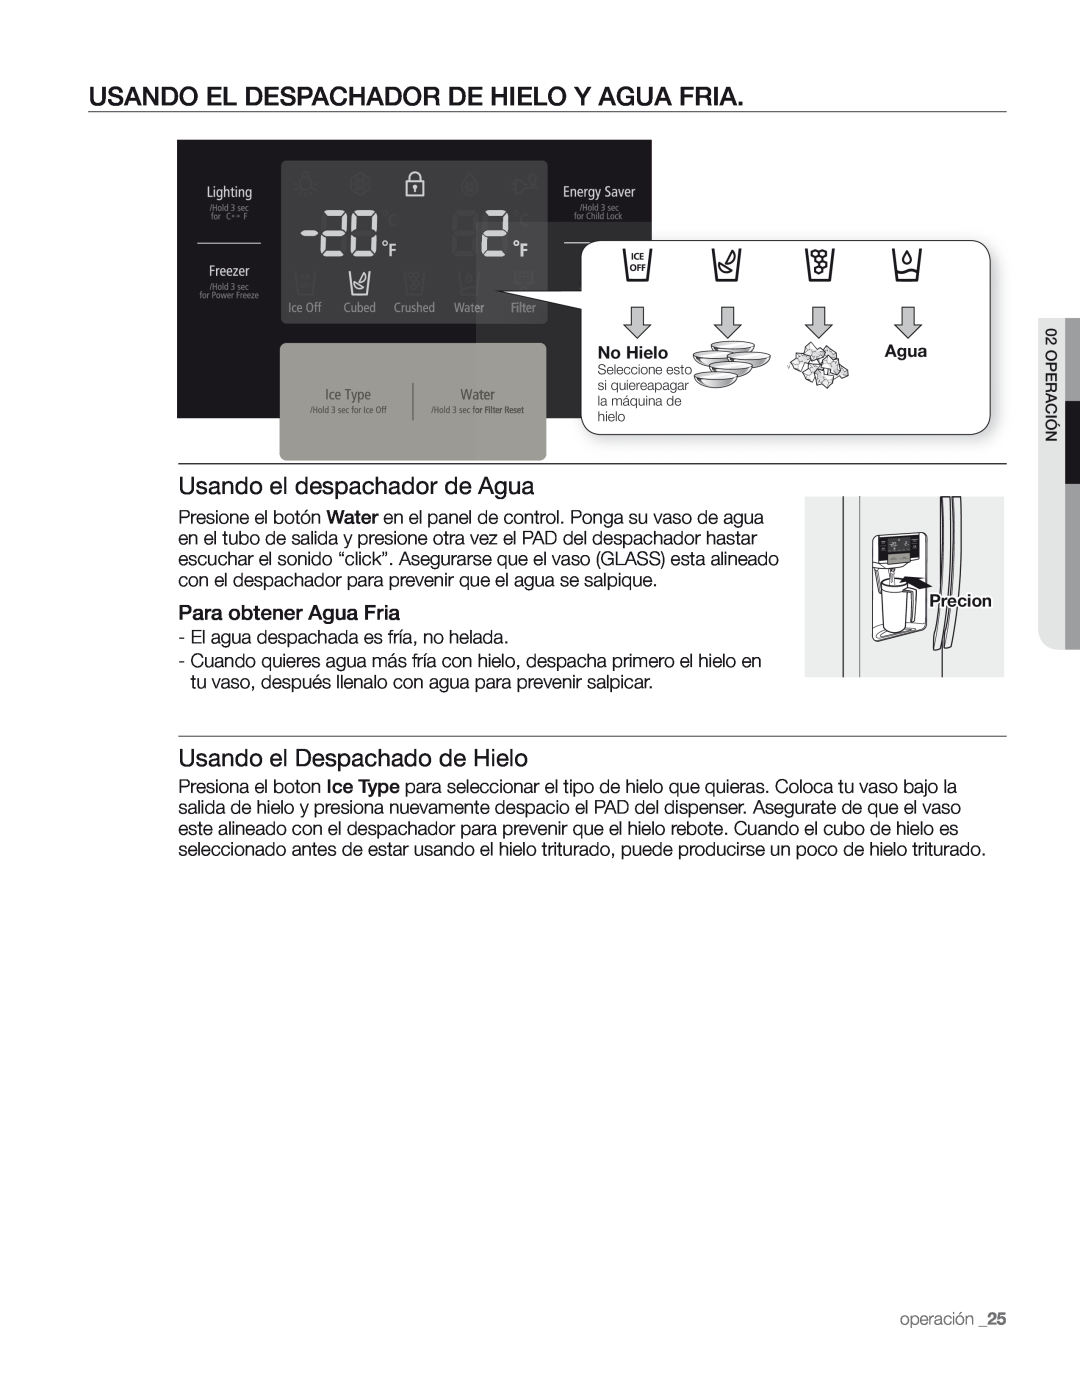 Samsung DA68-01890M Usando El Despachador De Hielo Y Agua Fria, Usando el despachador de Agua, Para obtener Agua Fria 